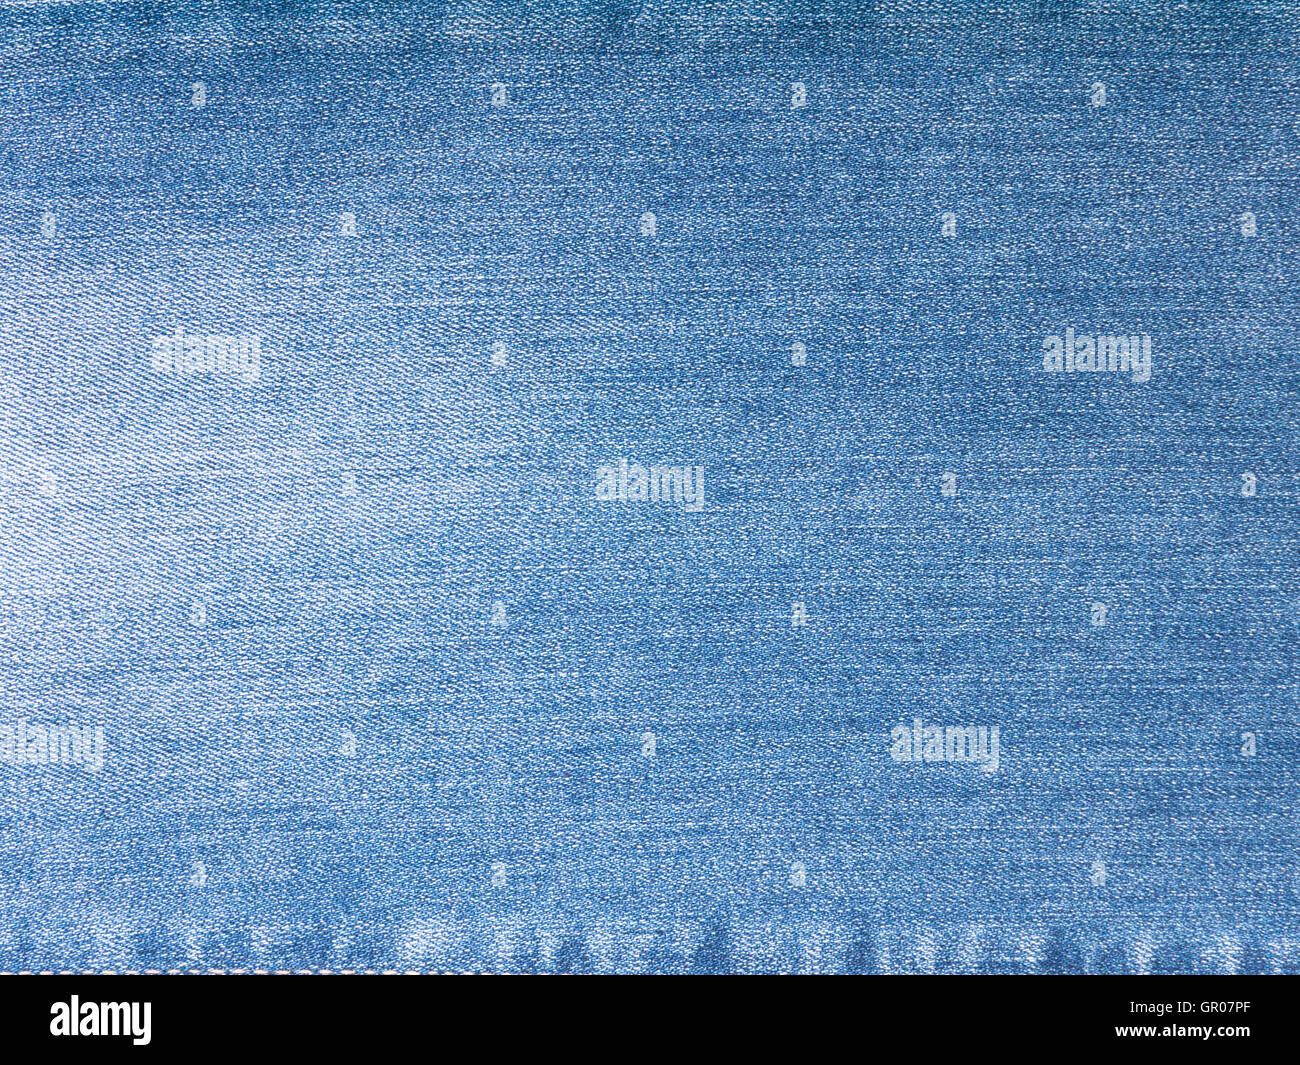 En denim délavé bleu clair lavé de fond en tissu Banque D'Images